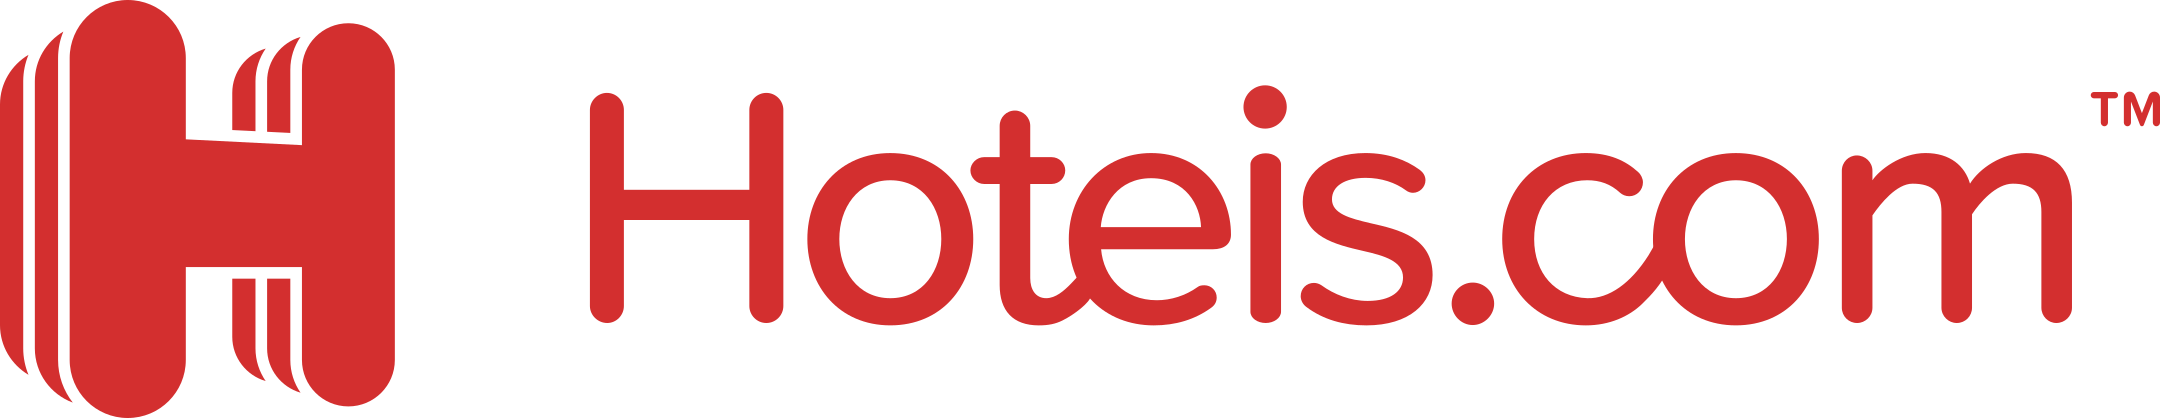 Hoteis.com Logo.